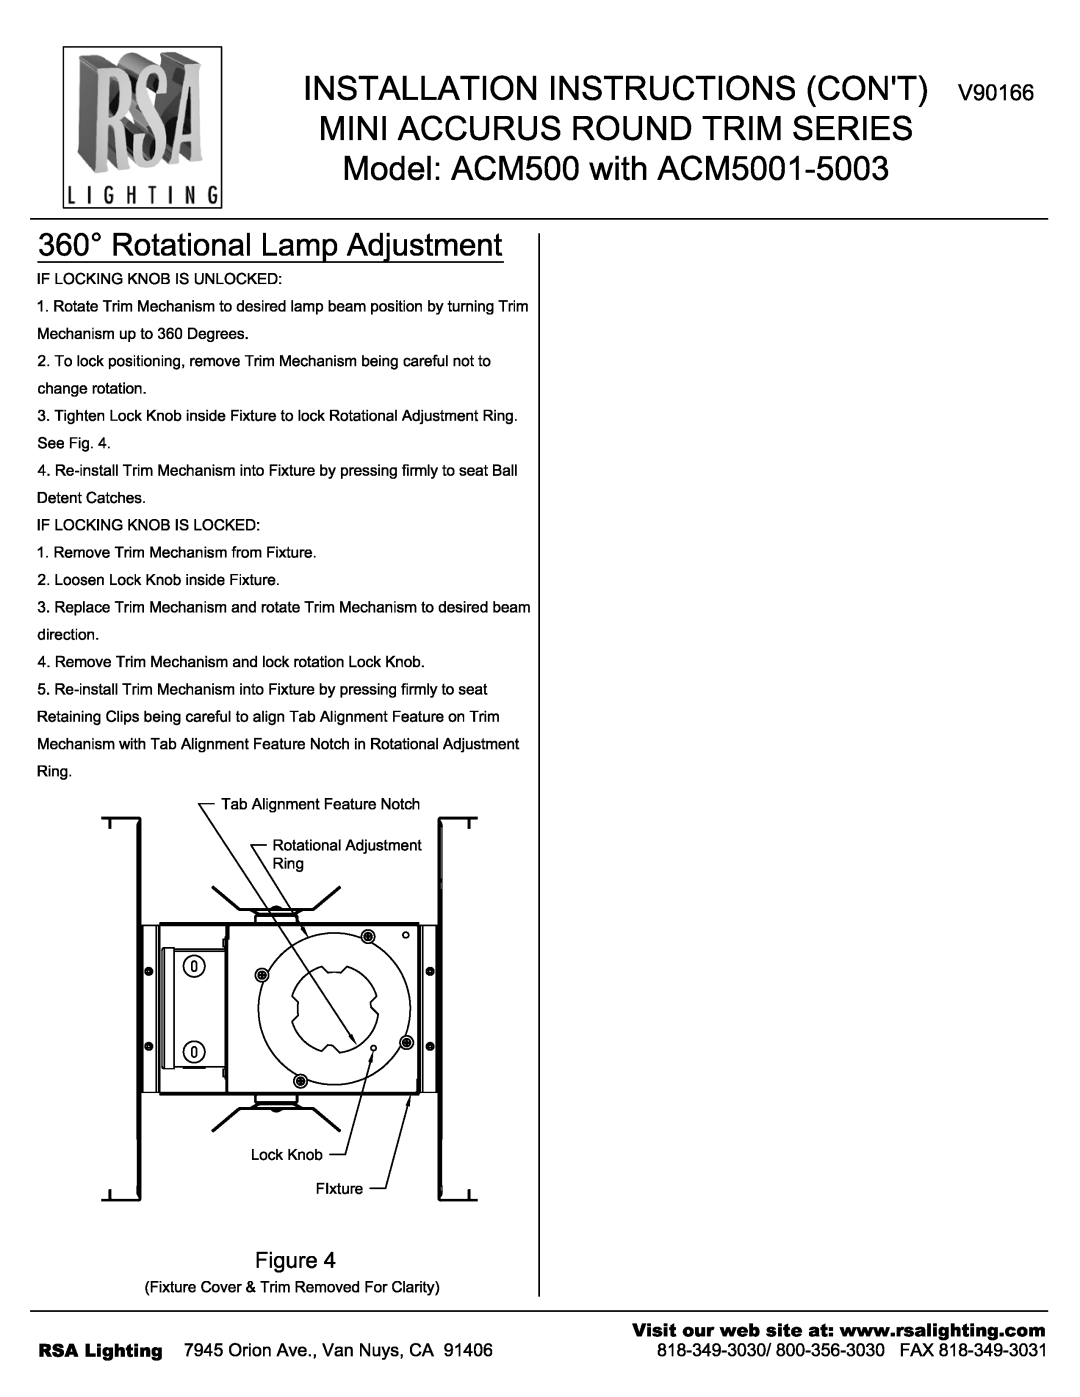 Cooper Lighting ACM5003, ACM5001 manual 